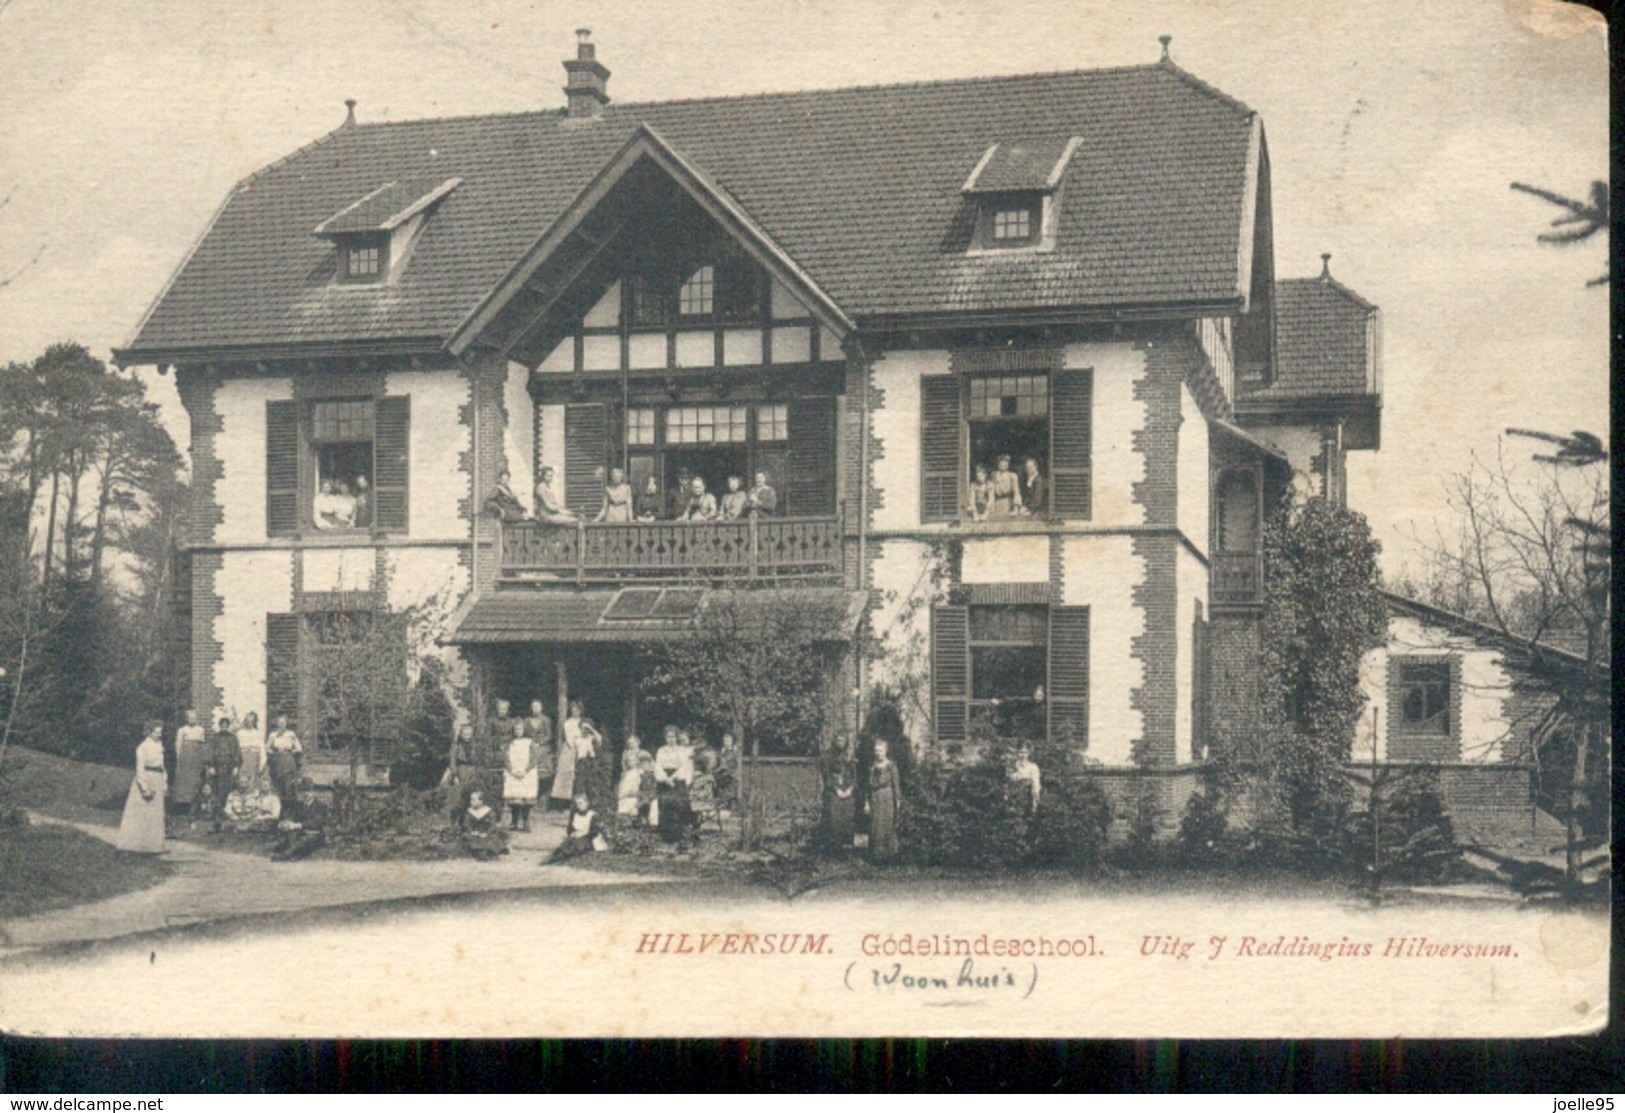 Hilversum - Godelinsdeschool - 1903 - Hilversum